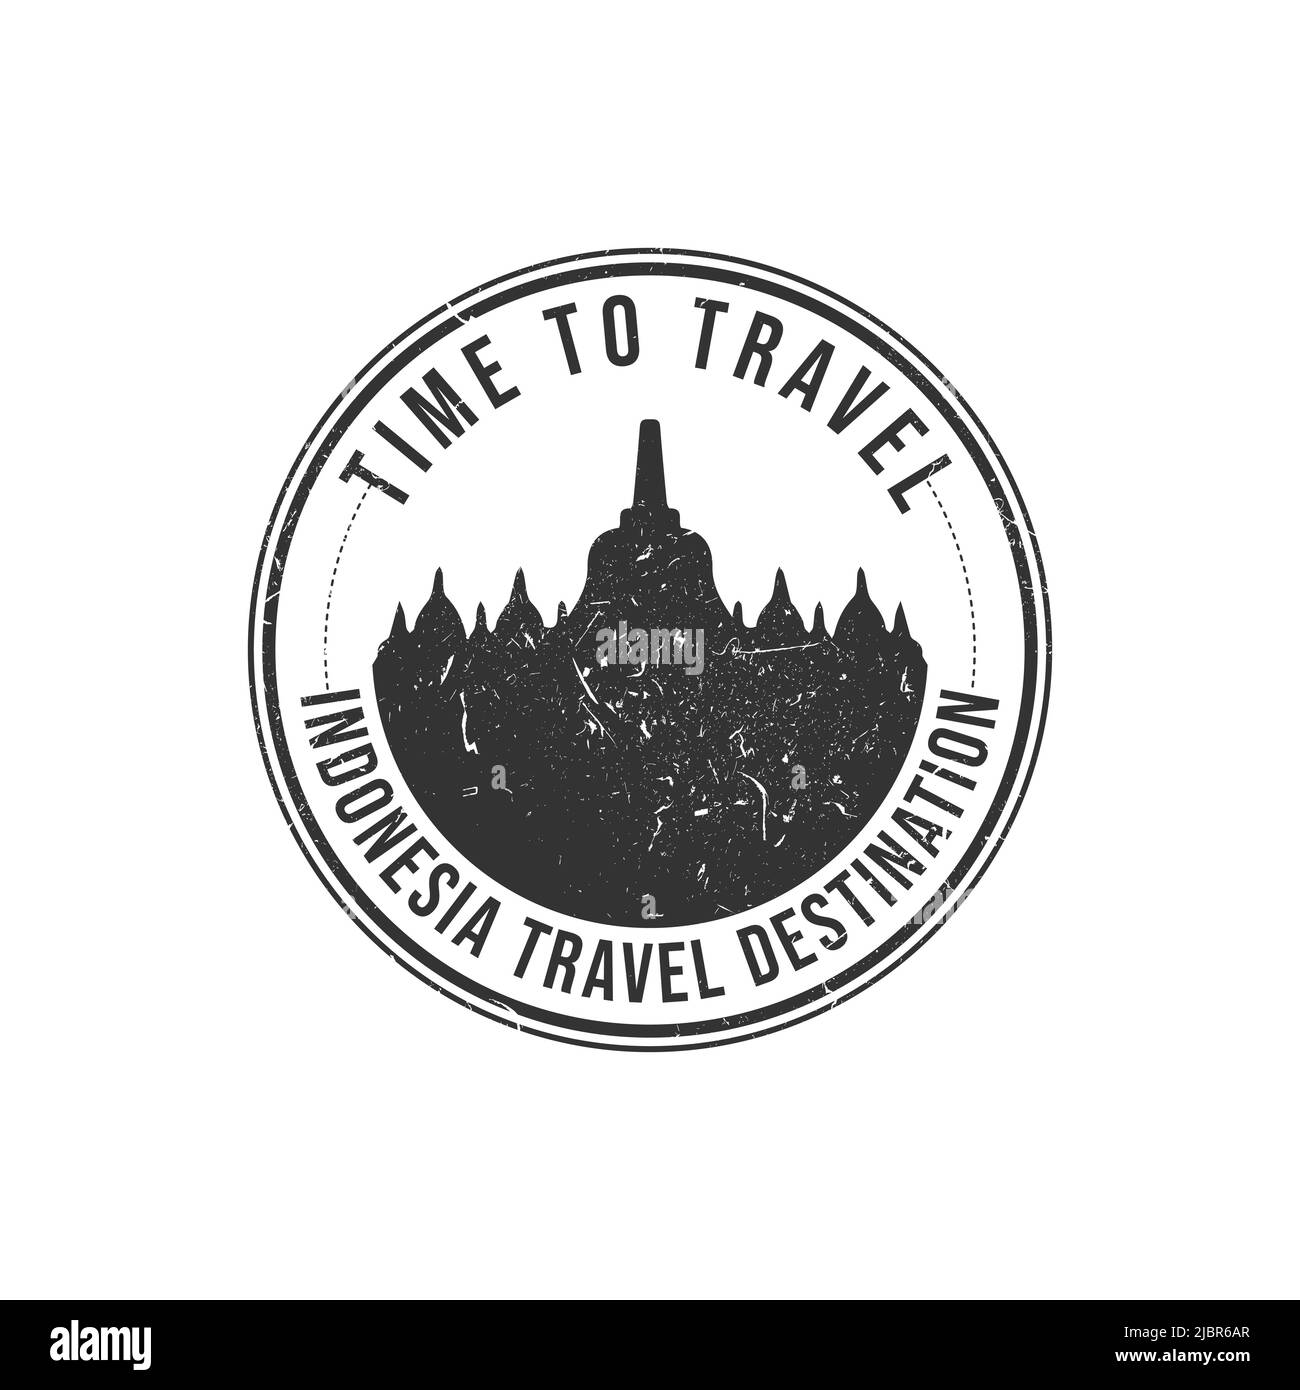 Grunge Gummistempel mit dem Text Borobudur travel Destination in der Marke geschrieben. Zeit zum Reisen. Silhouette borobudur Tempel indonesien histori Stock Vektor